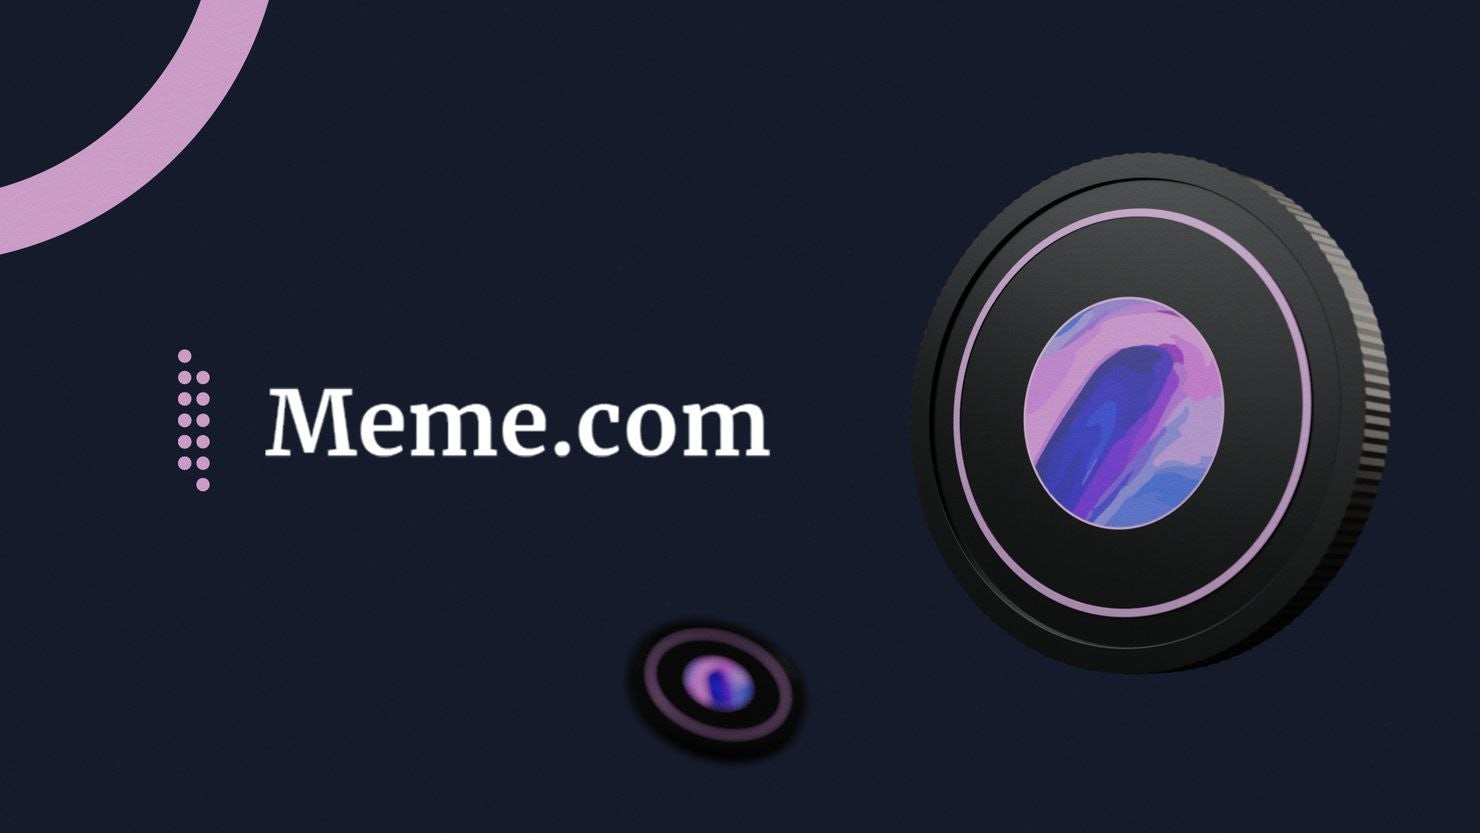 Meme.com Cover Image